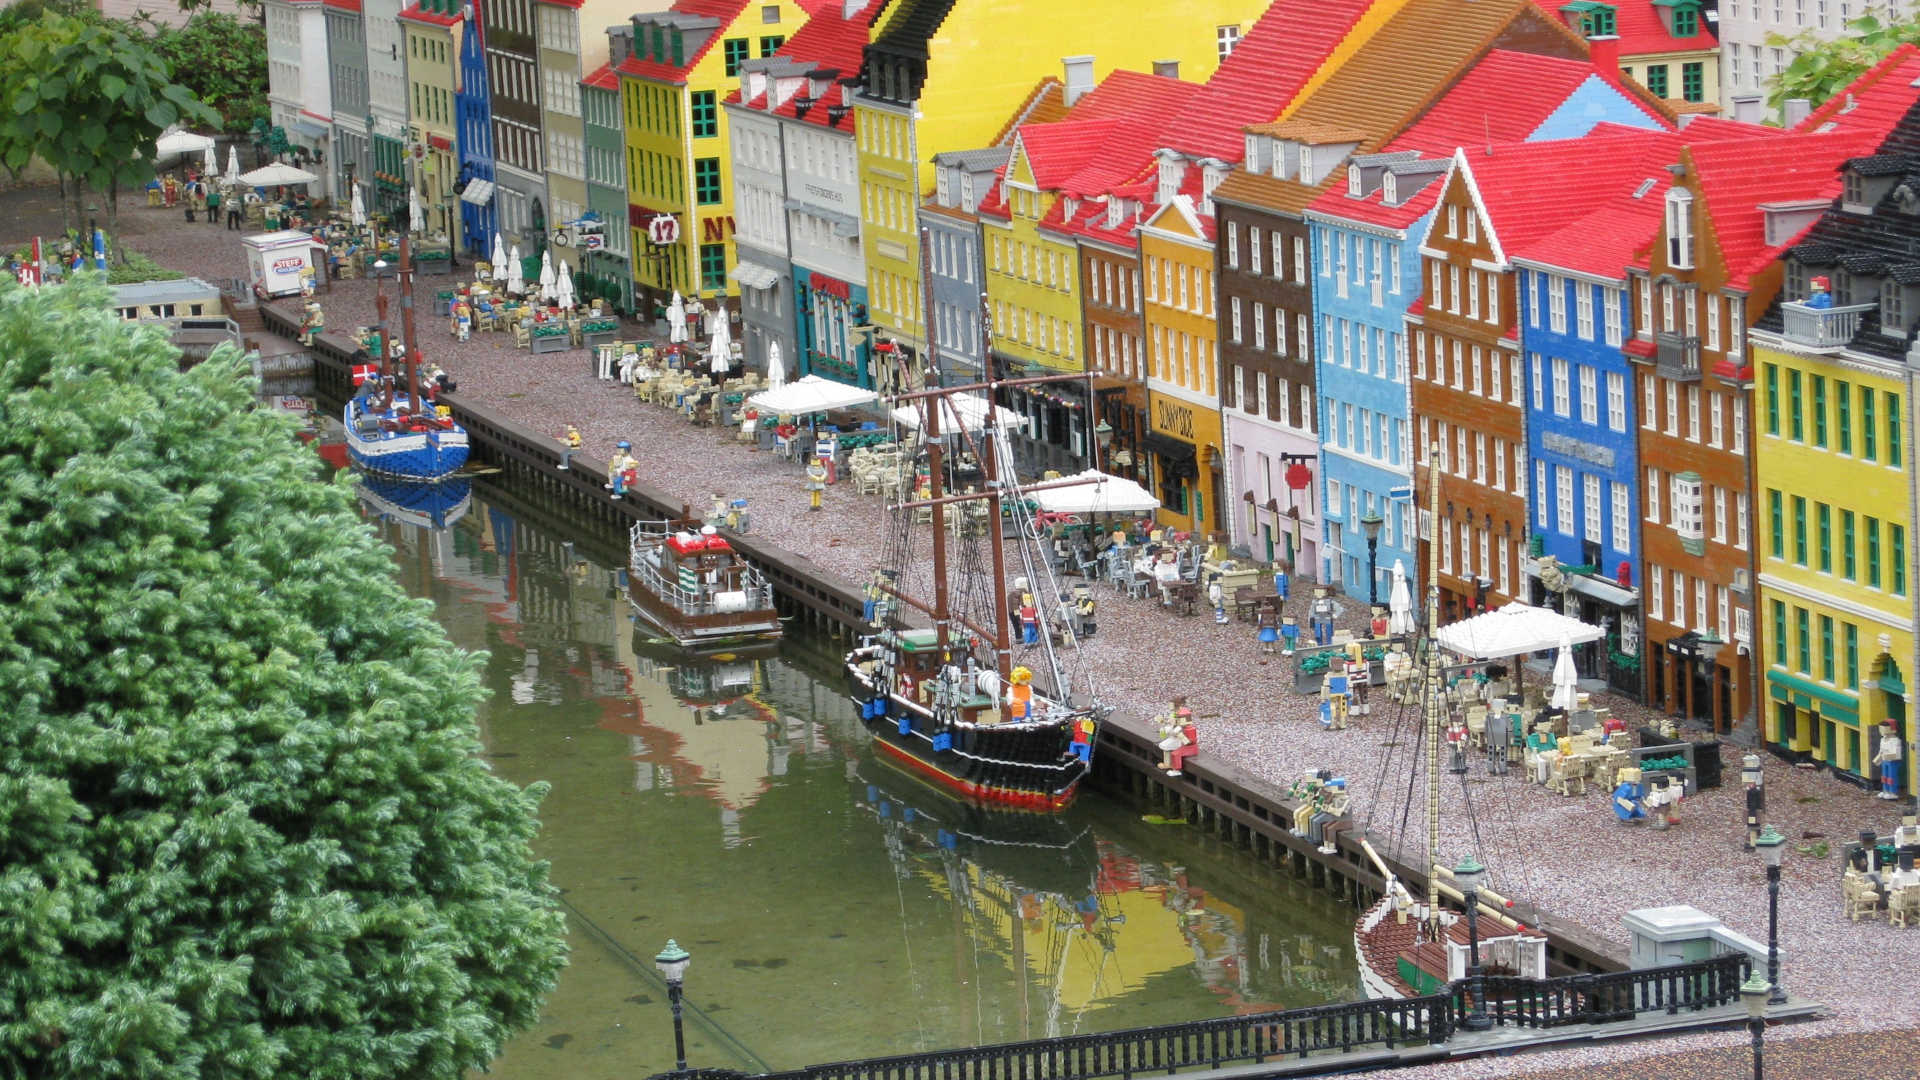 Wir sehen einen Ausschnitt von Kopenhagen Nyhavn. Erst auf den zweiten Blick ist zu erkennen, dass wir uns im Legoland befinden und wir auf einen Nachbau aus tausenden Legosteinen schauen.